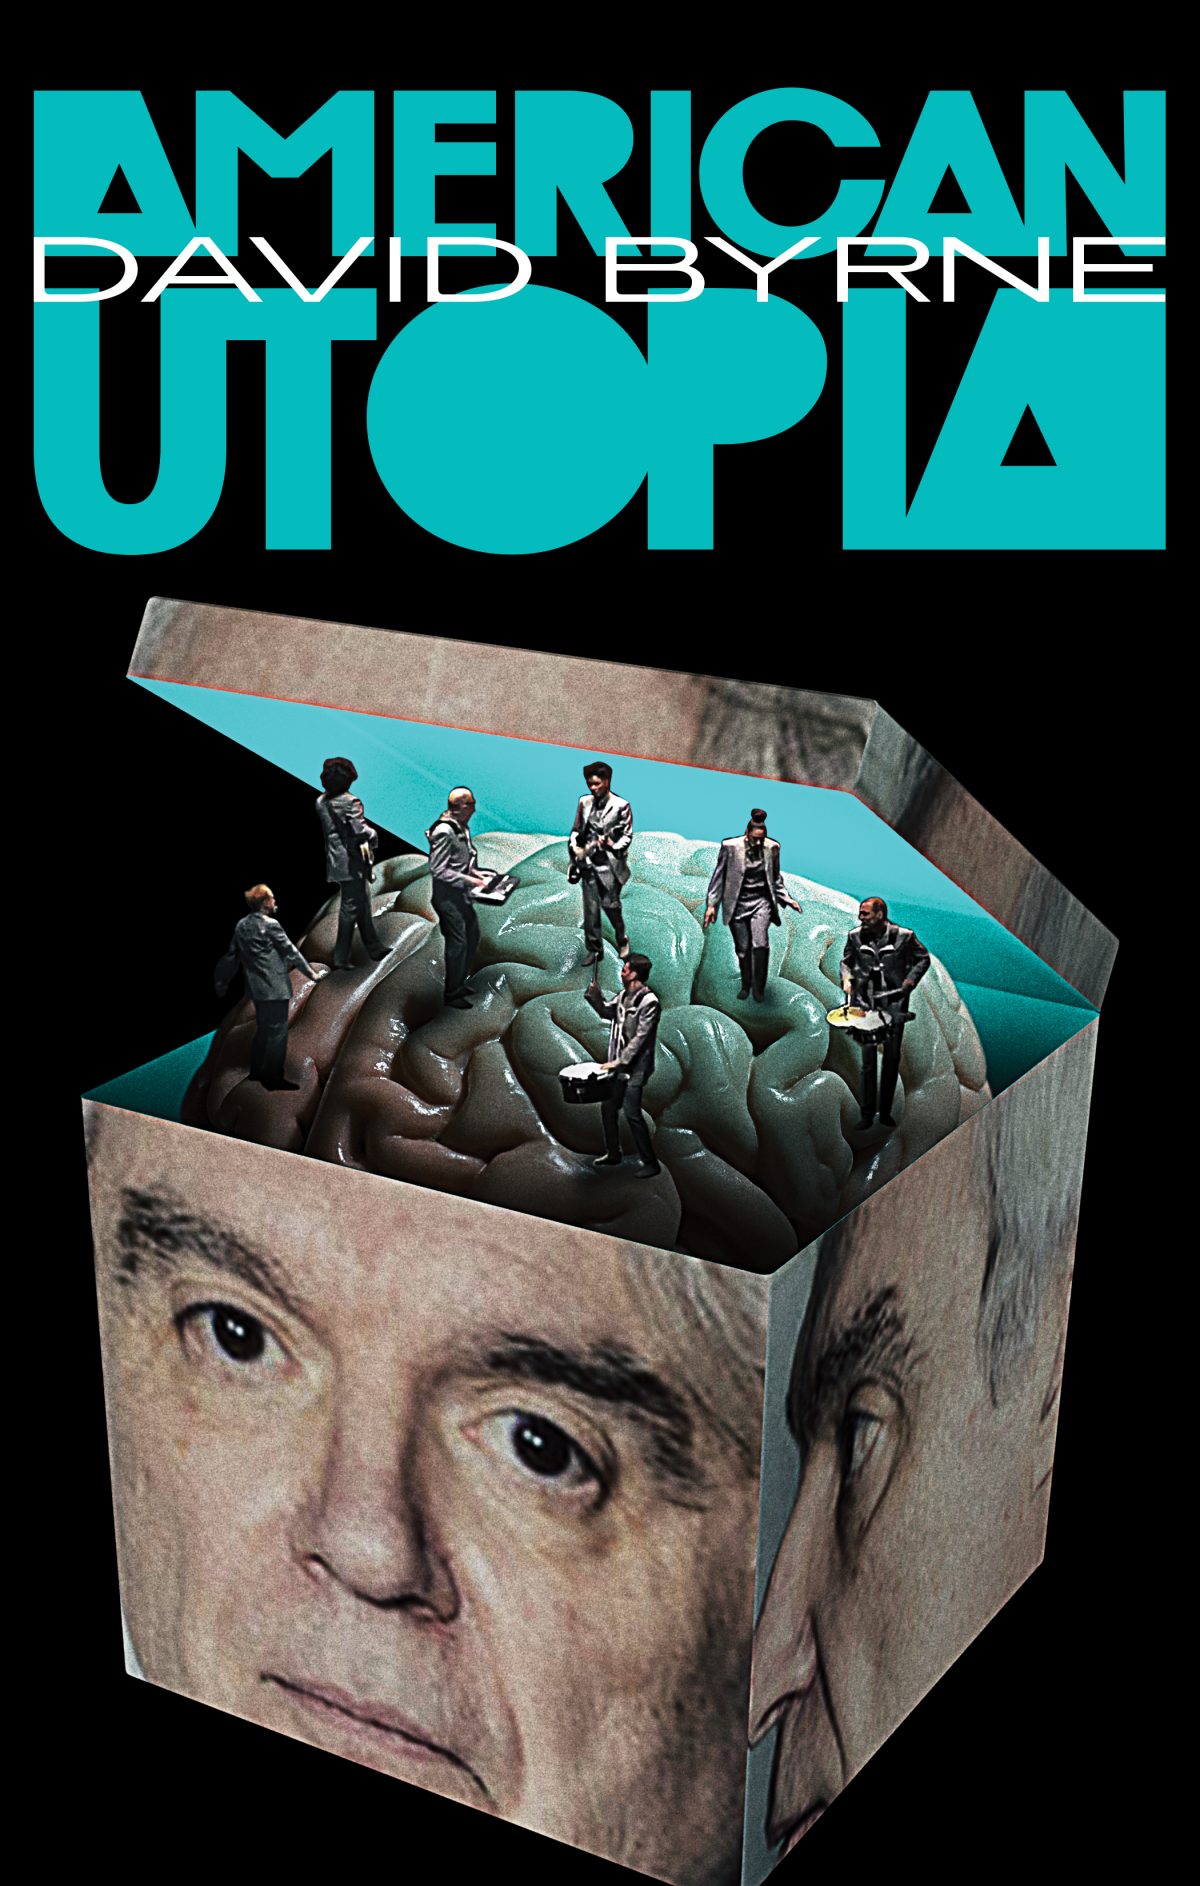 American Utopia PosterSpy